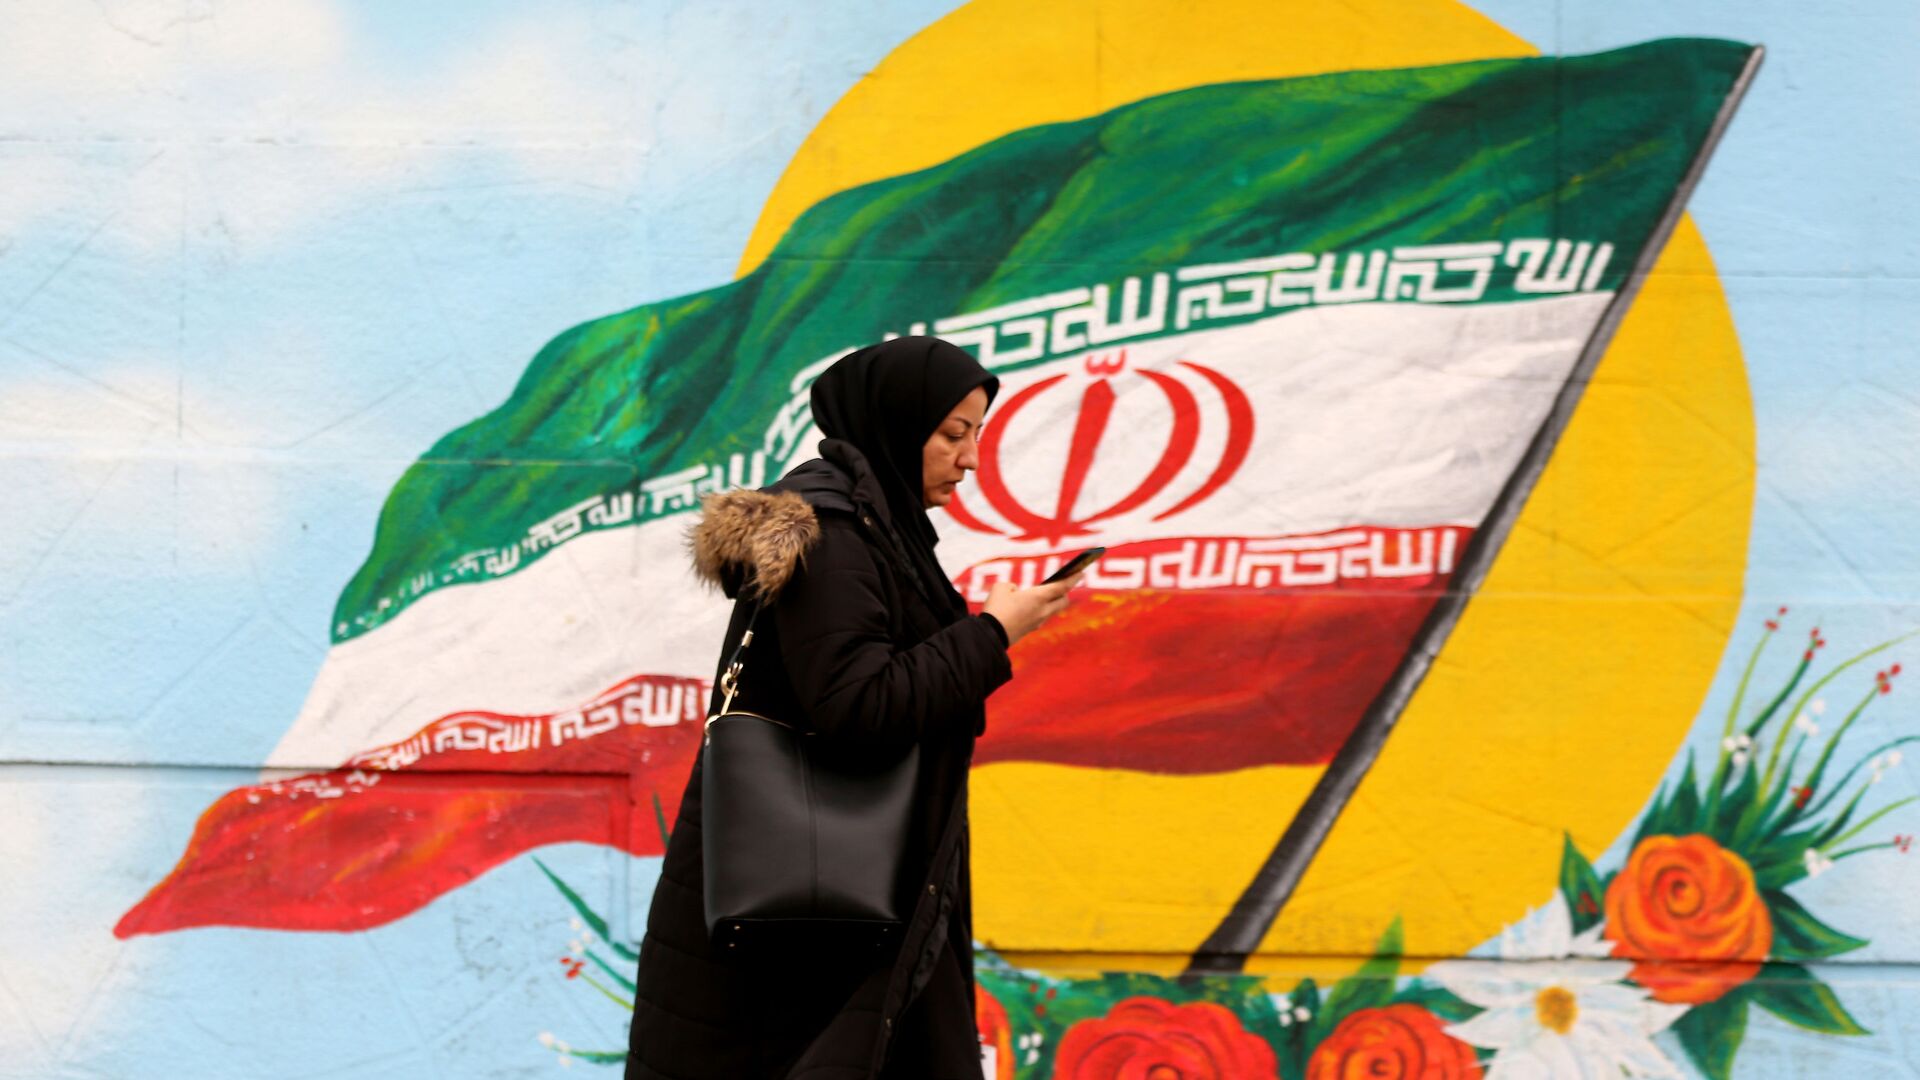 Женщина проходит перед фреской, на которой изображен иранский национальный флаг, фото из архива - Sputnik Азербайджан, 1920, 22.11.2021